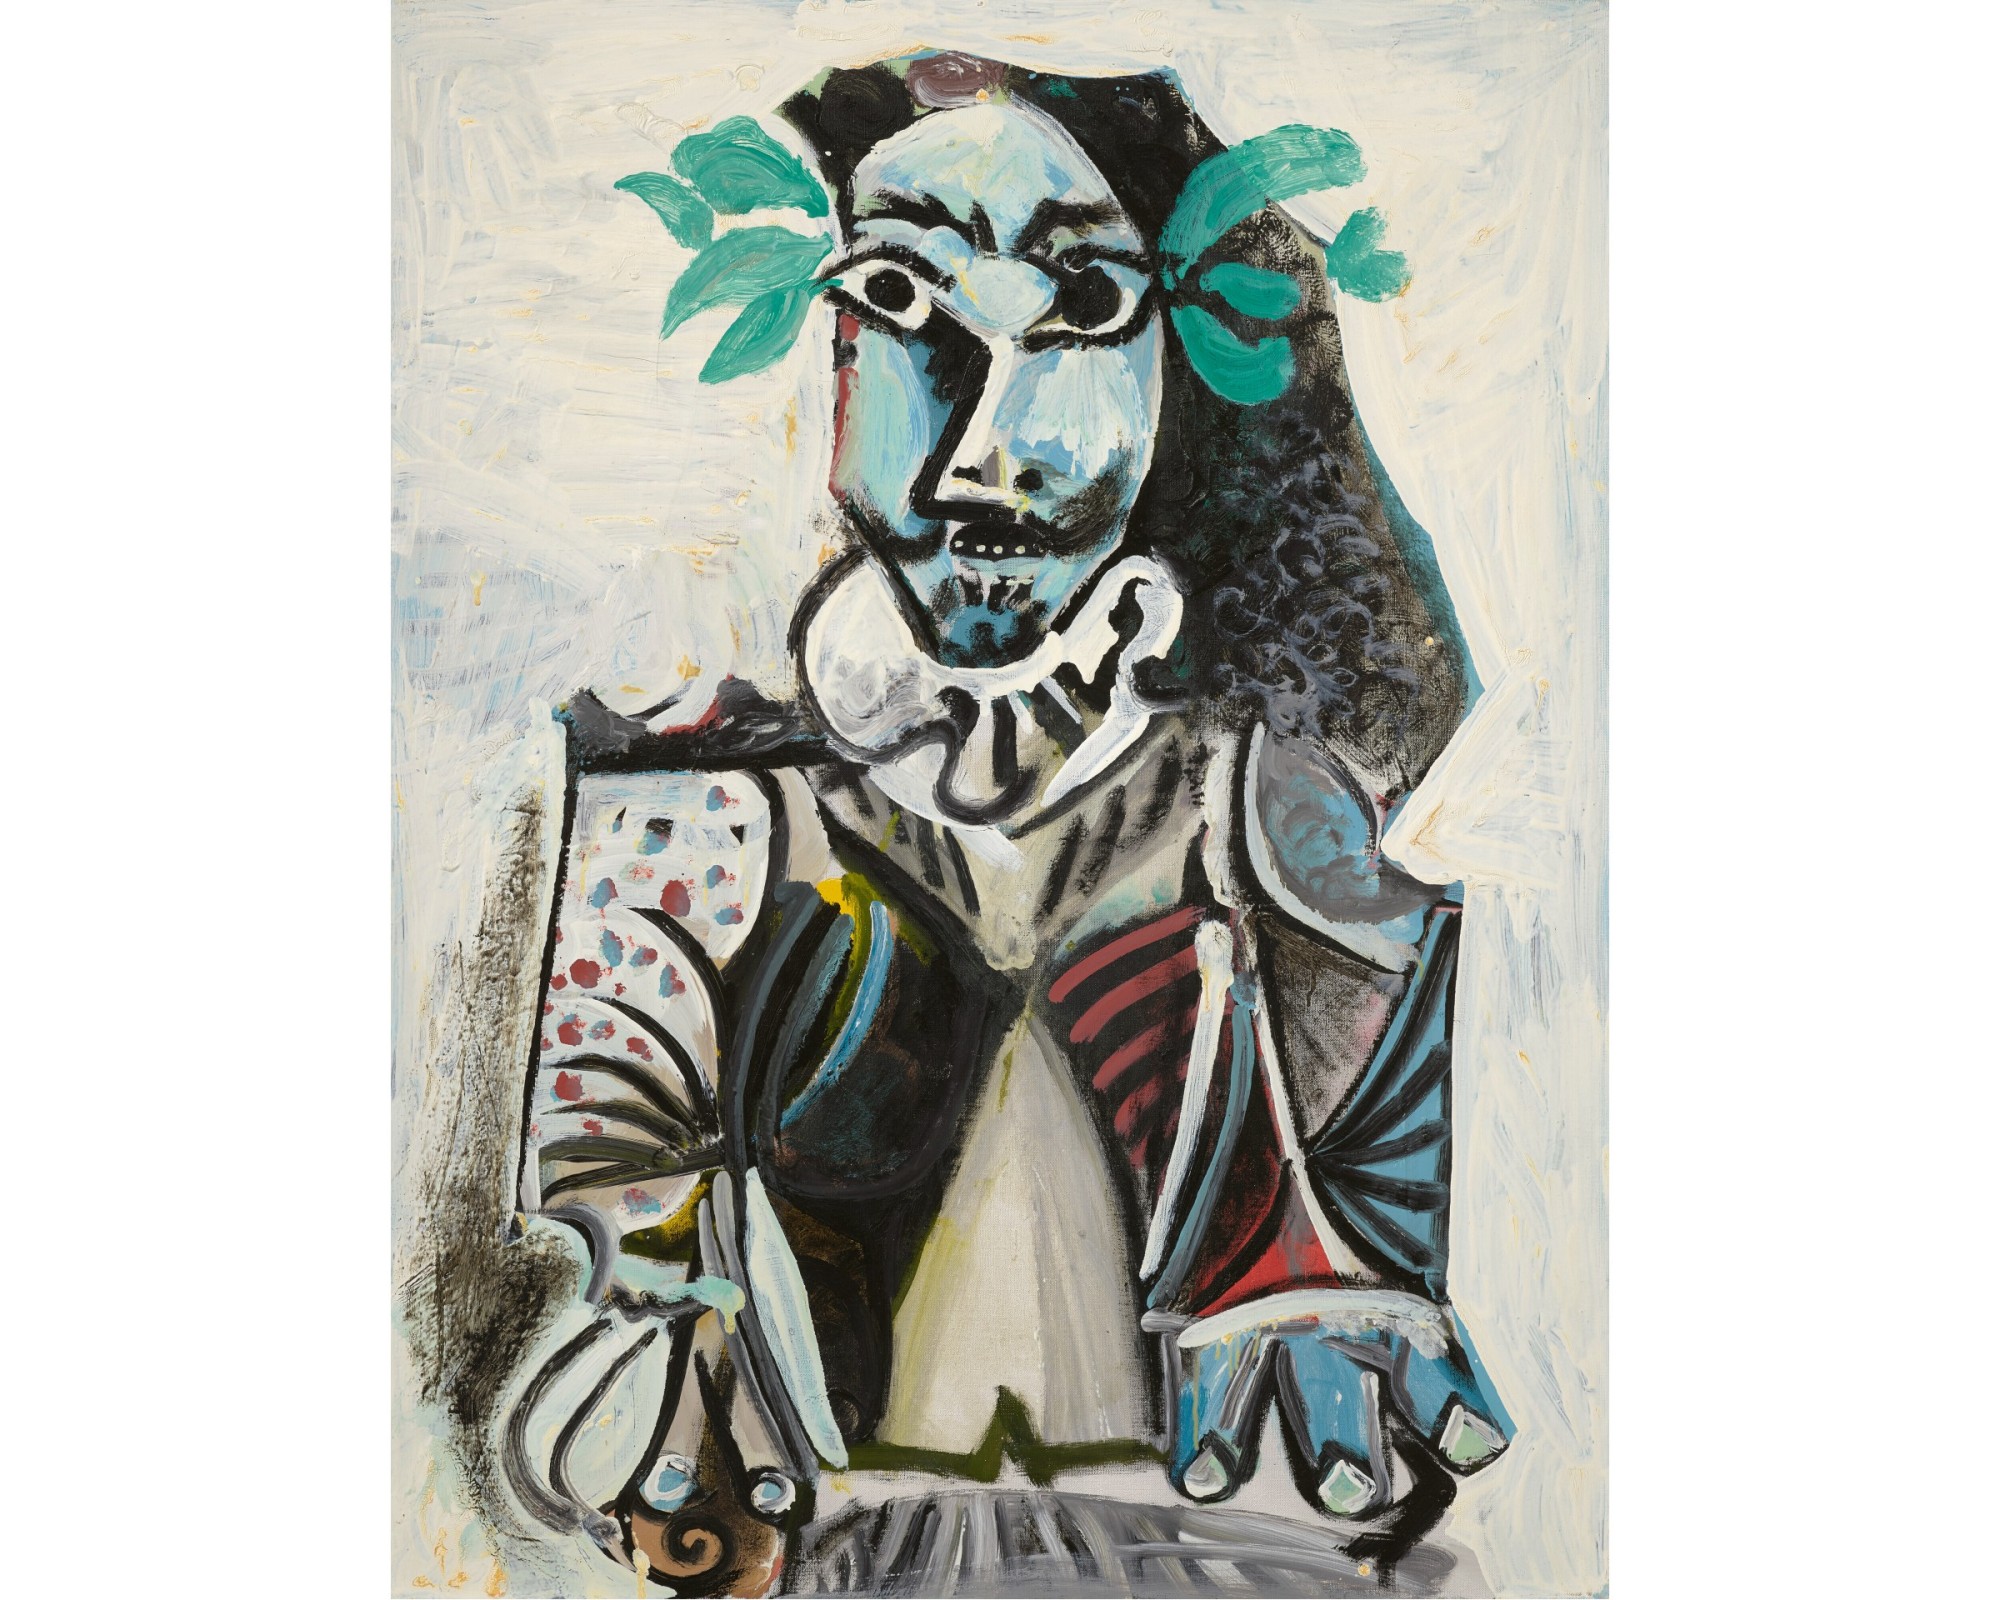 Pablo Picasso's 1969 painting Buste d'homme lauré.